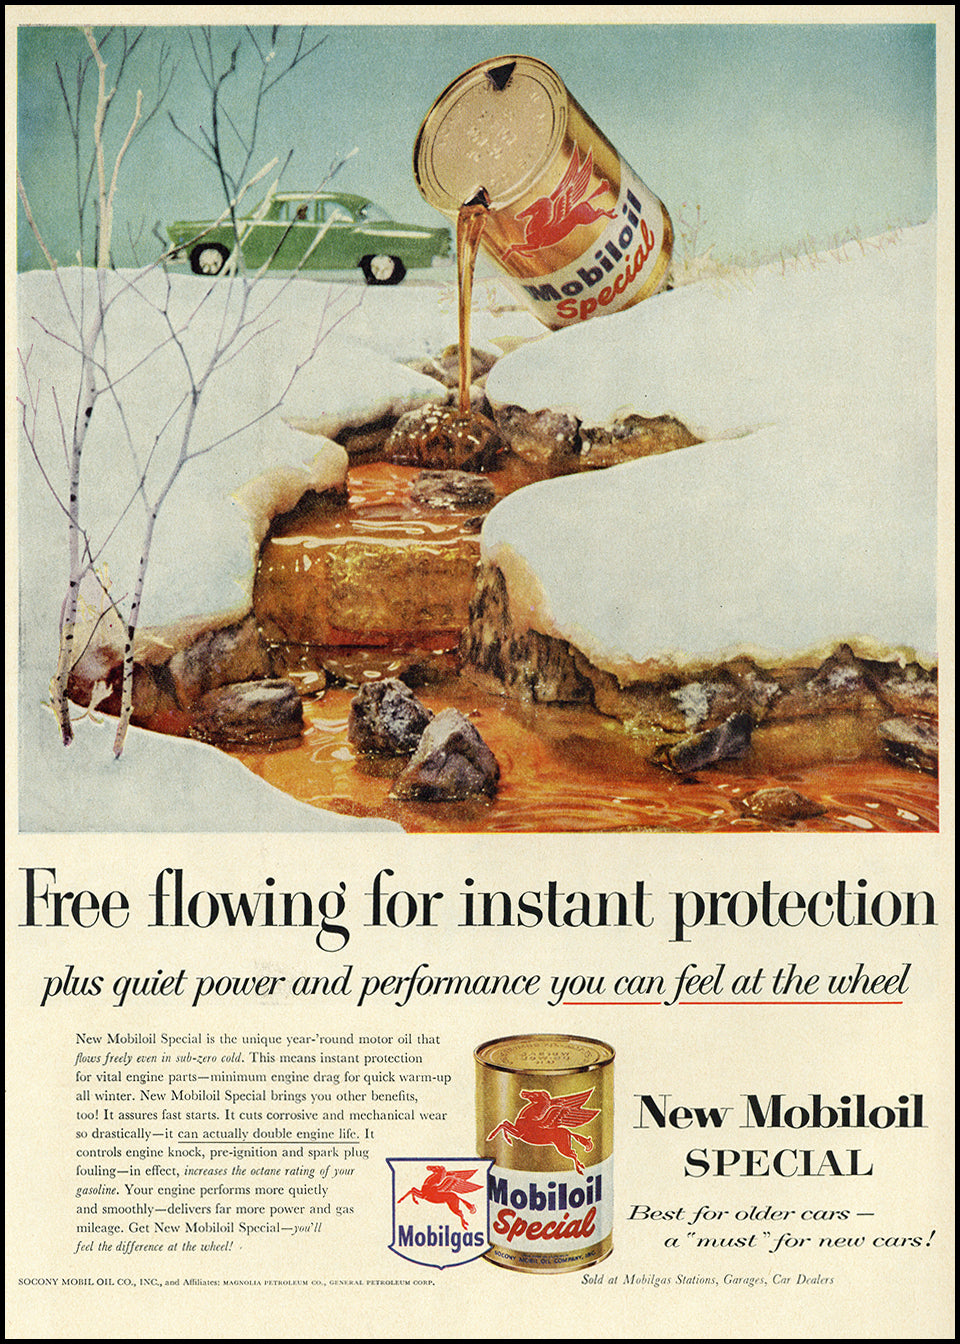 Original & Authentic Vintage Petroliana Ads at Adirondack Retro